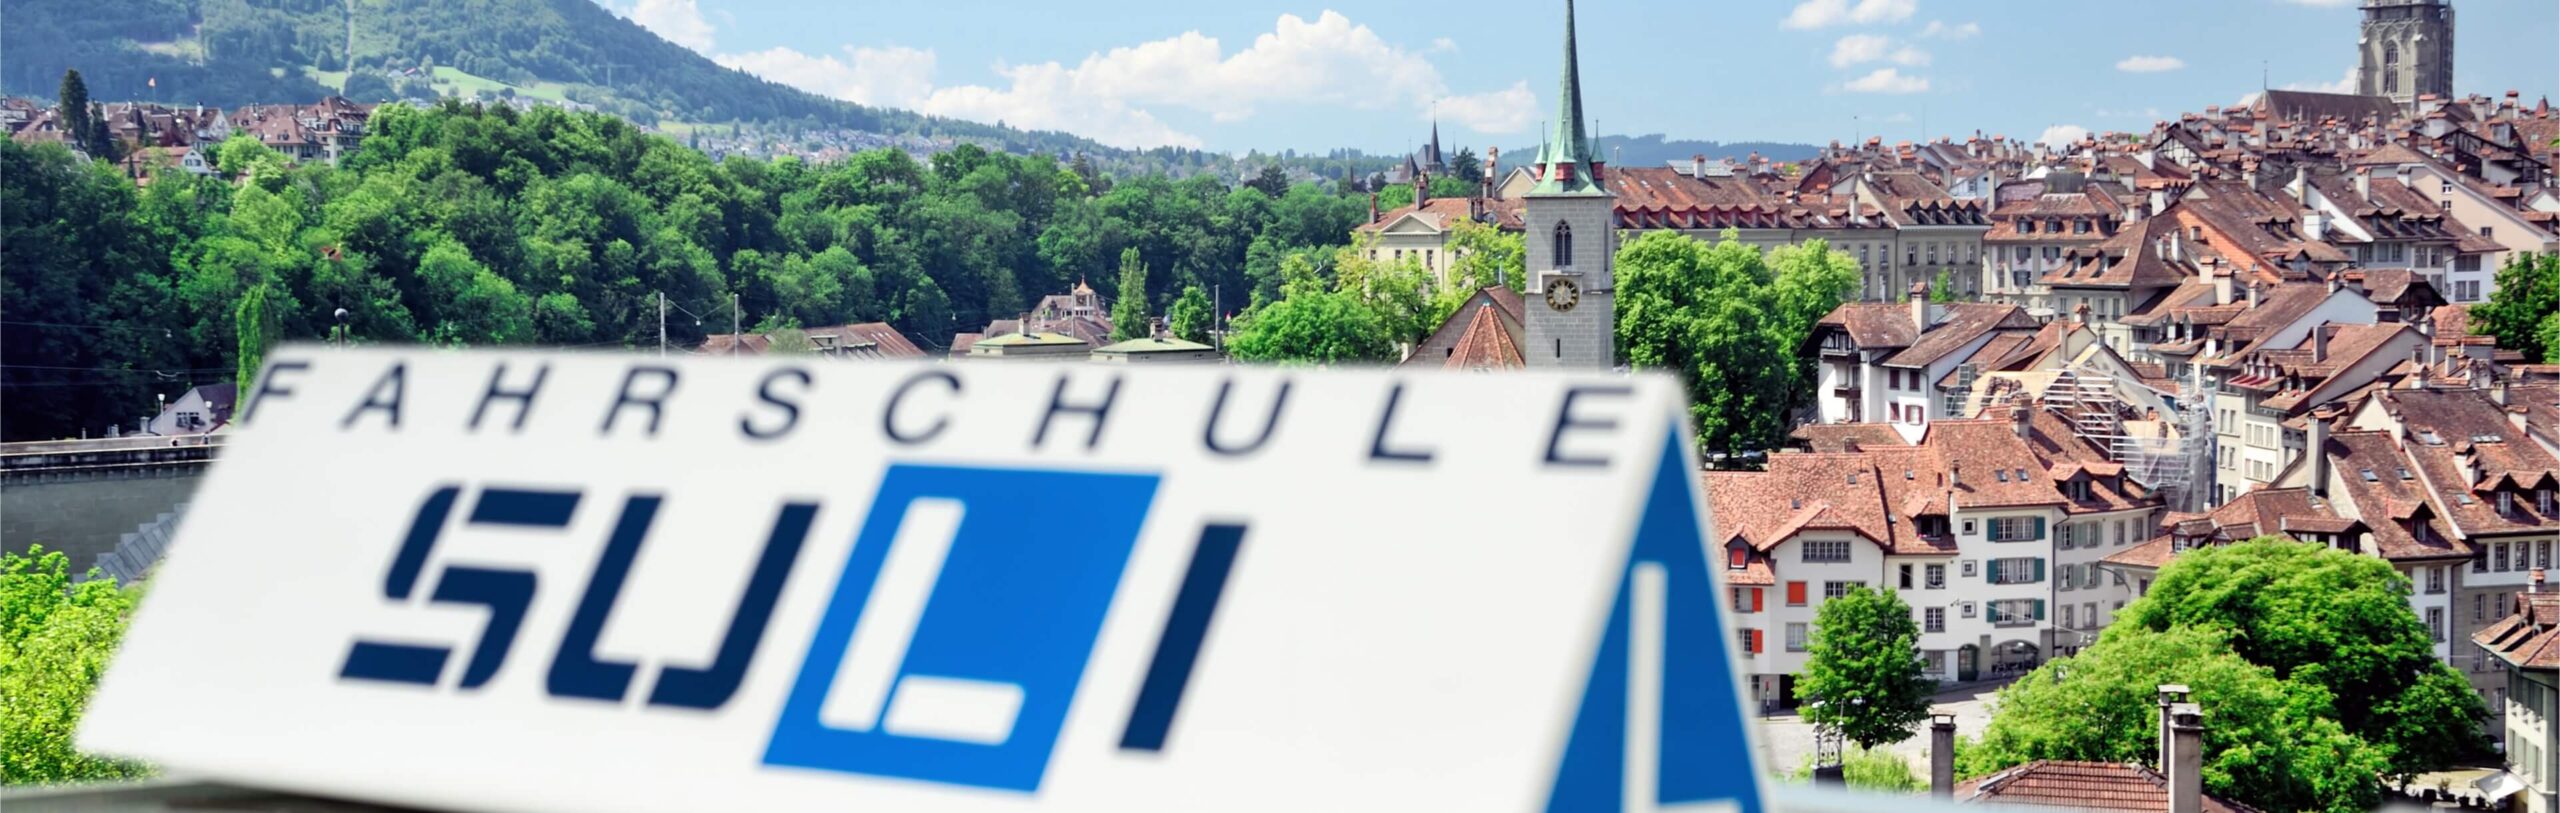 Blick auf die historische Stadt Bern, Standort einer Fahrschule in Bern, mit charakteristischen Häusern und Grünflächen im Hintergrund.